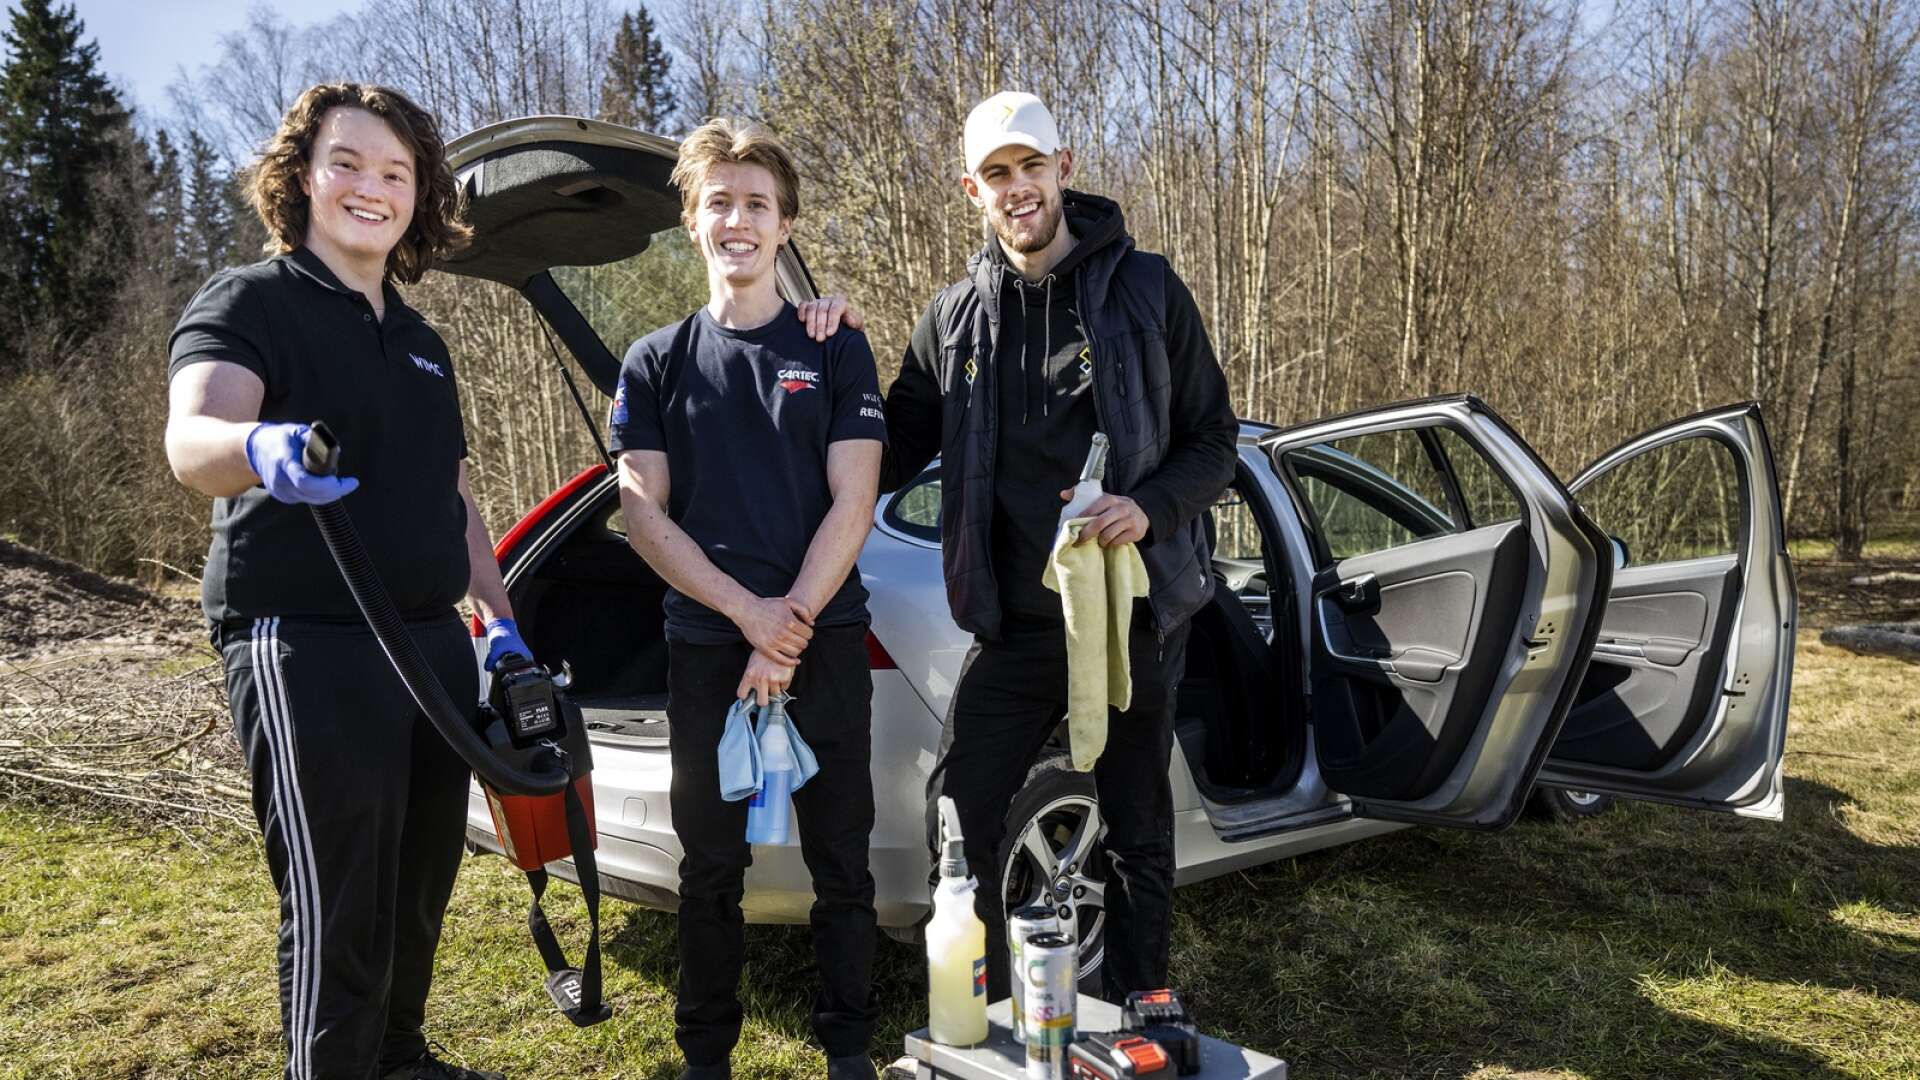 Martin Engdahl Laweregren, Chester Winberg och Ludvig Elander Andersson gjorde sitt första sponsringsuppdrag när de städade bilar på Karlstads ridklubb.